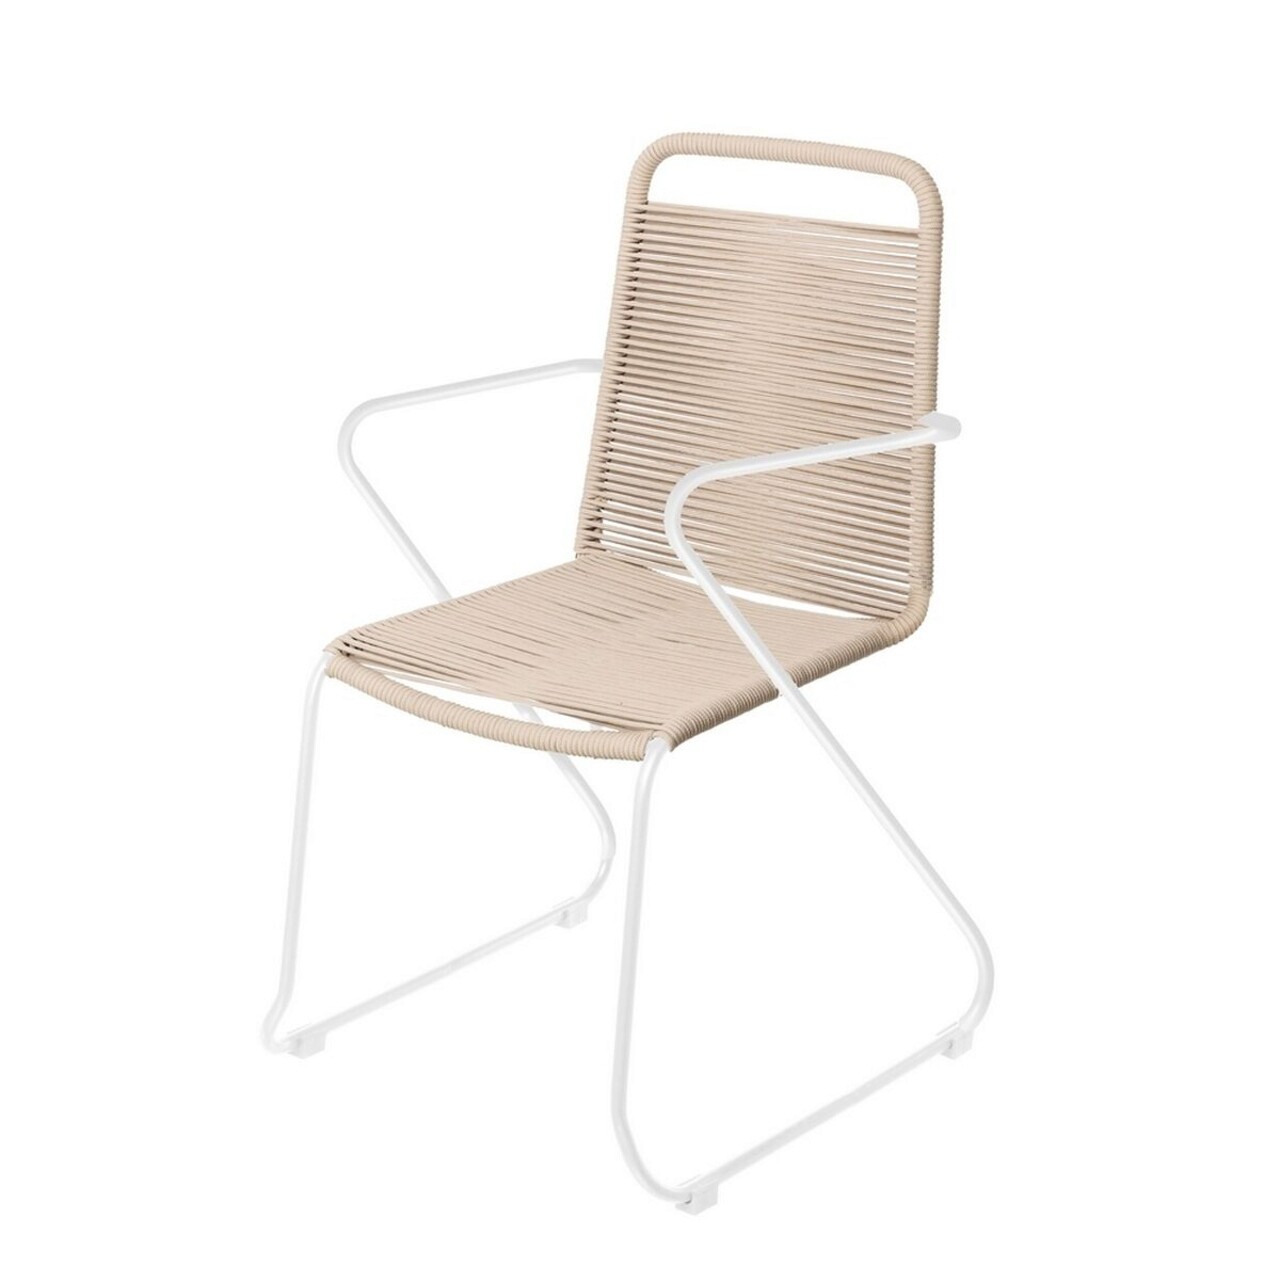 Antea Kerti szék, 53 x 53 x 88 cm, acél/madzag, grézs/fehér